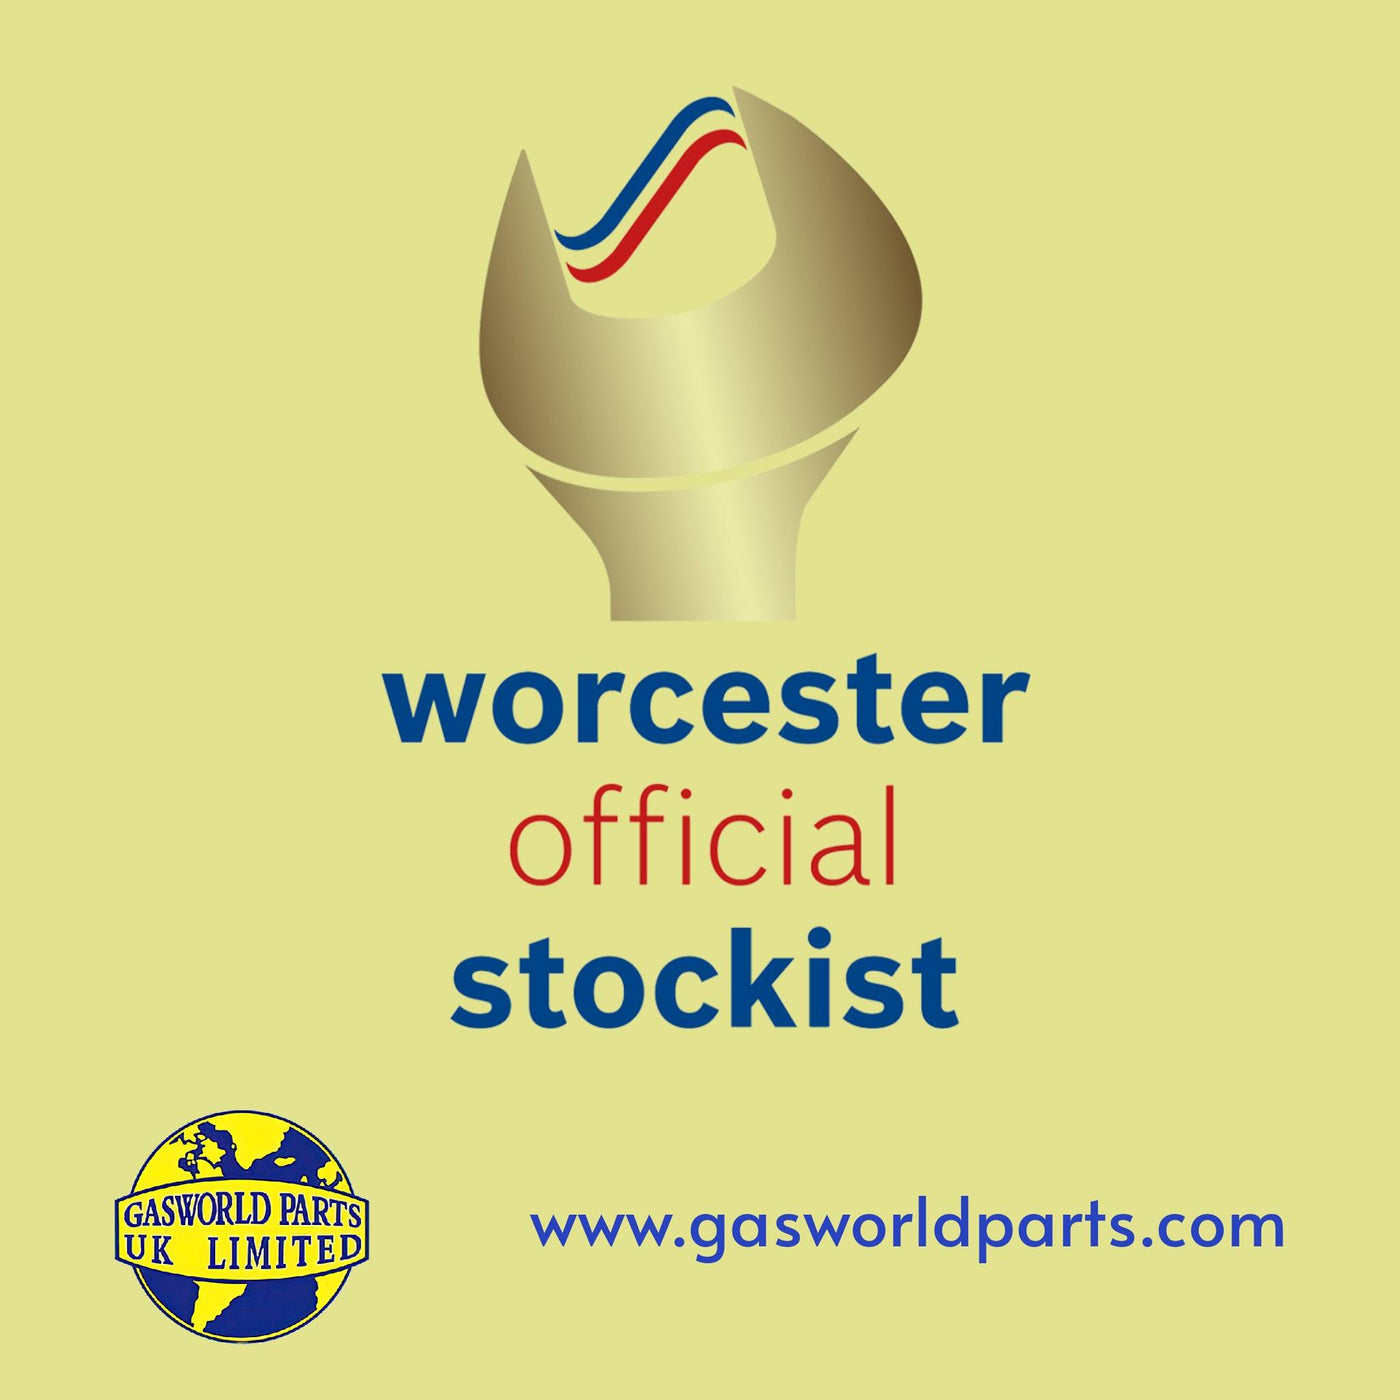 Worcester Bosch Gold Stockist